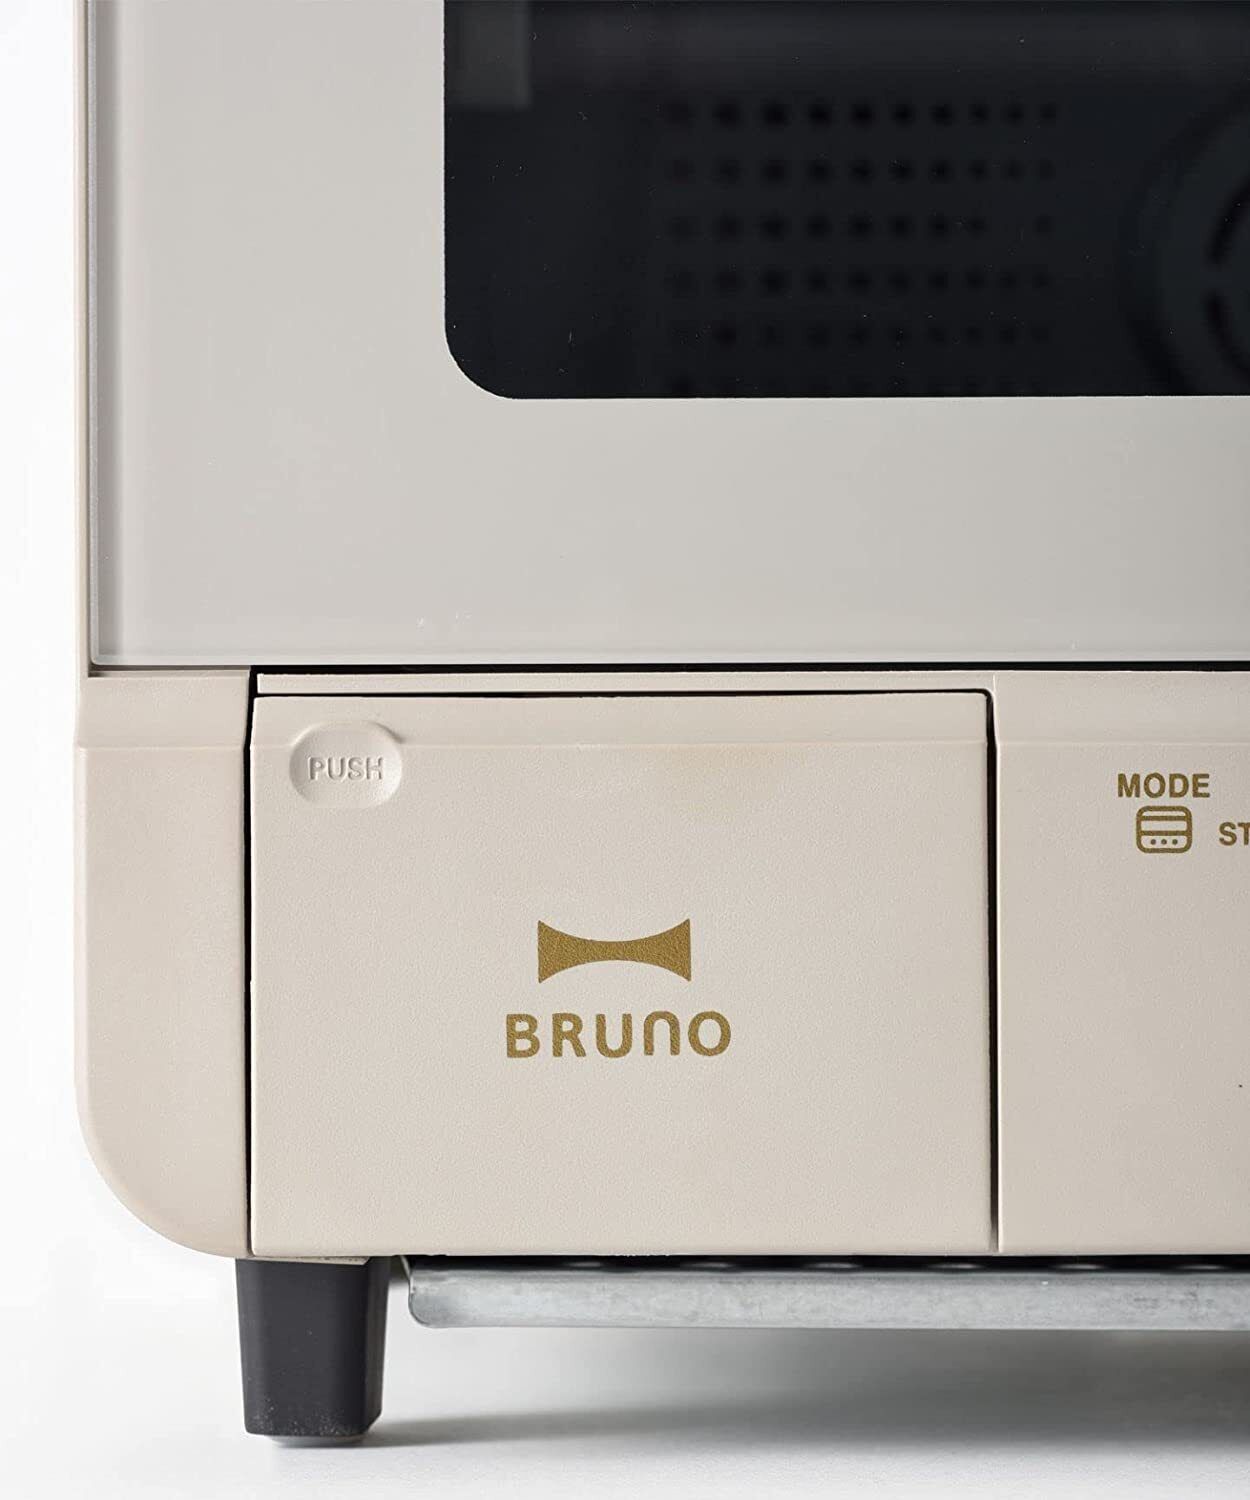 BOE067-GRG 100V BRUNO crassy+ steam and bake toaster Bakes 4 slices bread New